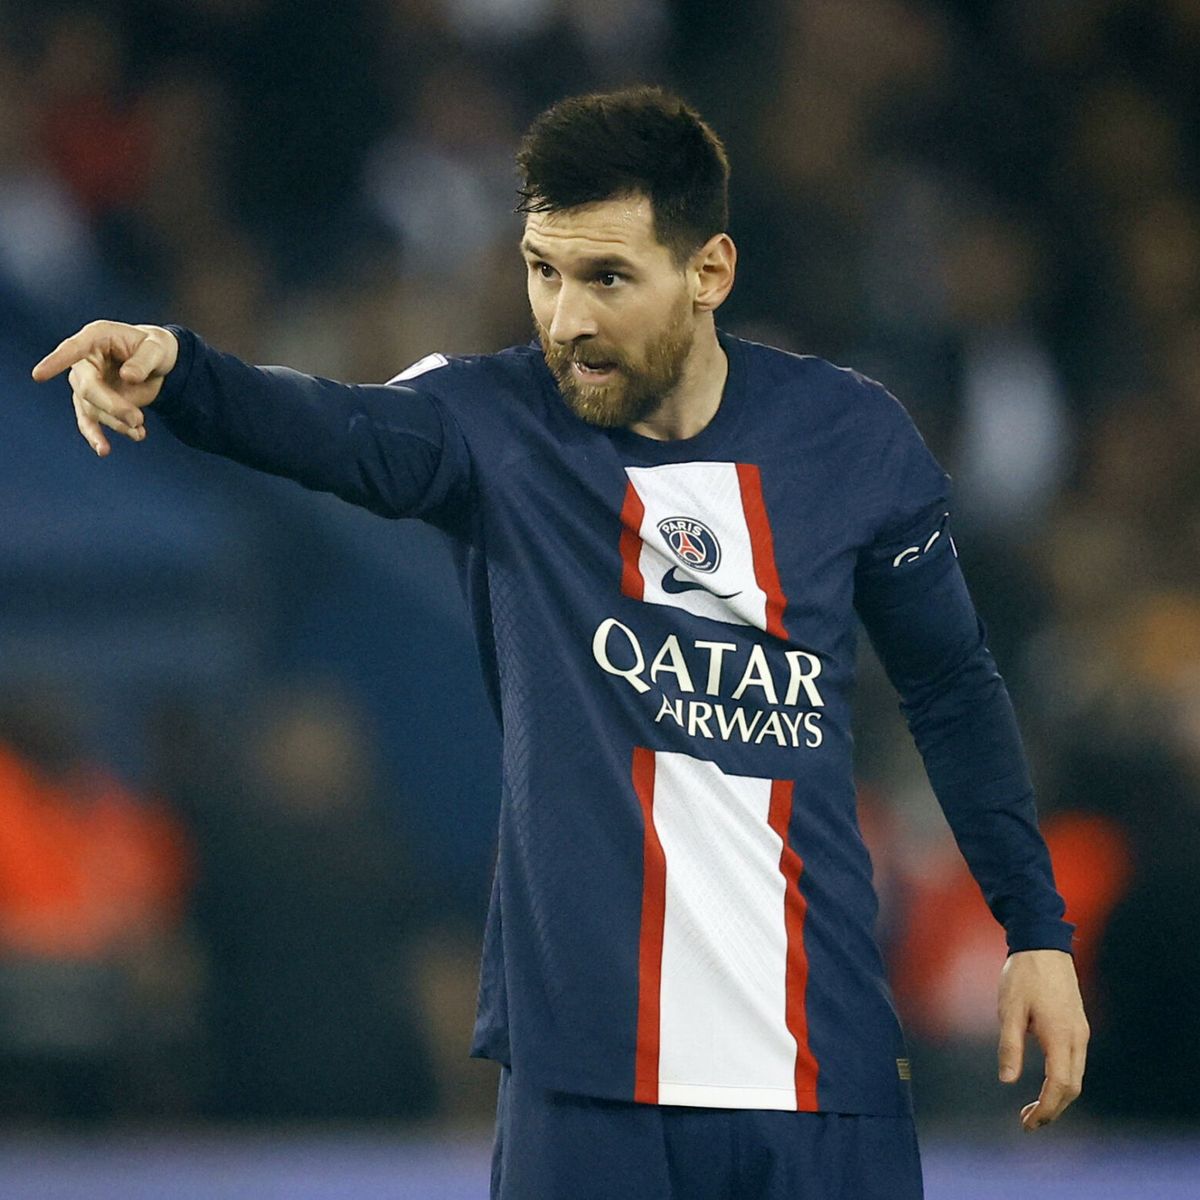 El imparable Messi: cómo pasar de ser un tristón en el PSG a querer volver  a ser el mejor del mundo